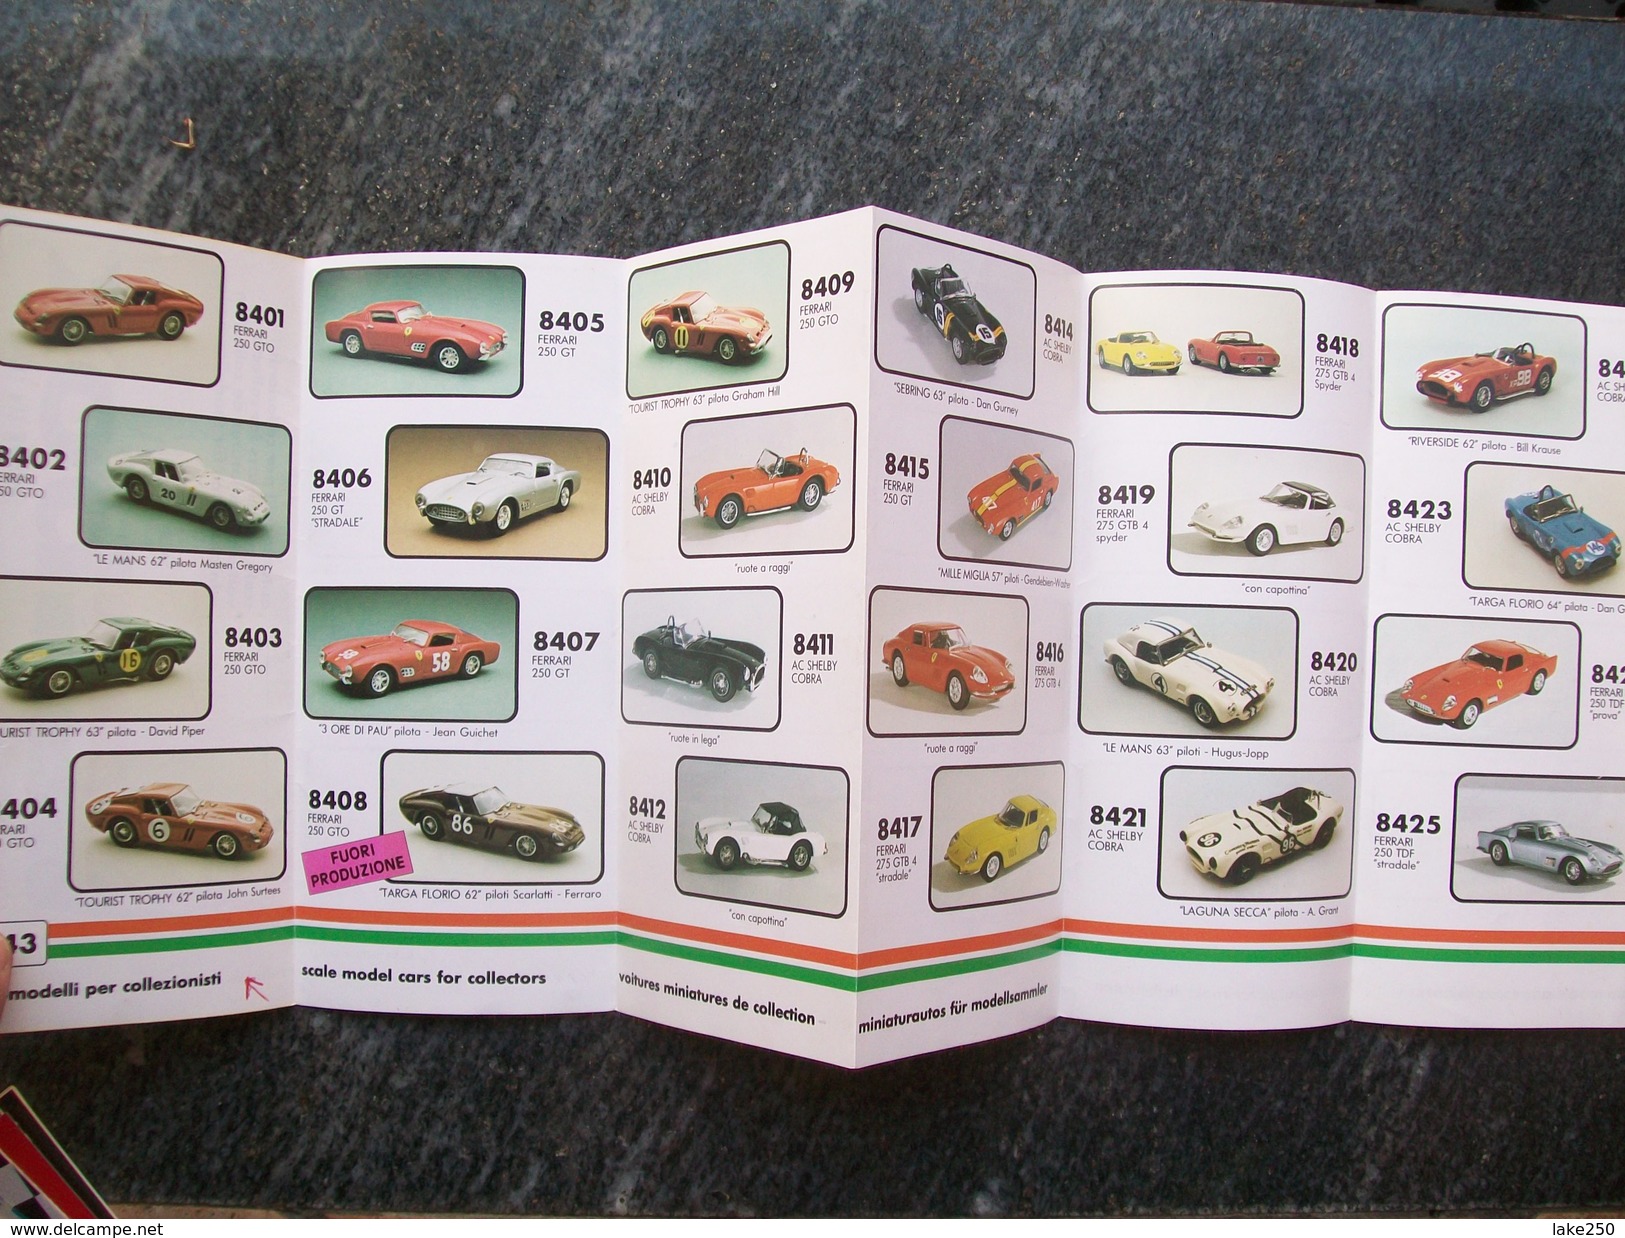 CATALOGO / PIEGHEVOLE  BOX MODEL AUTOMODELLI IN SCALA 1/43  1988  FERRARI - Italy